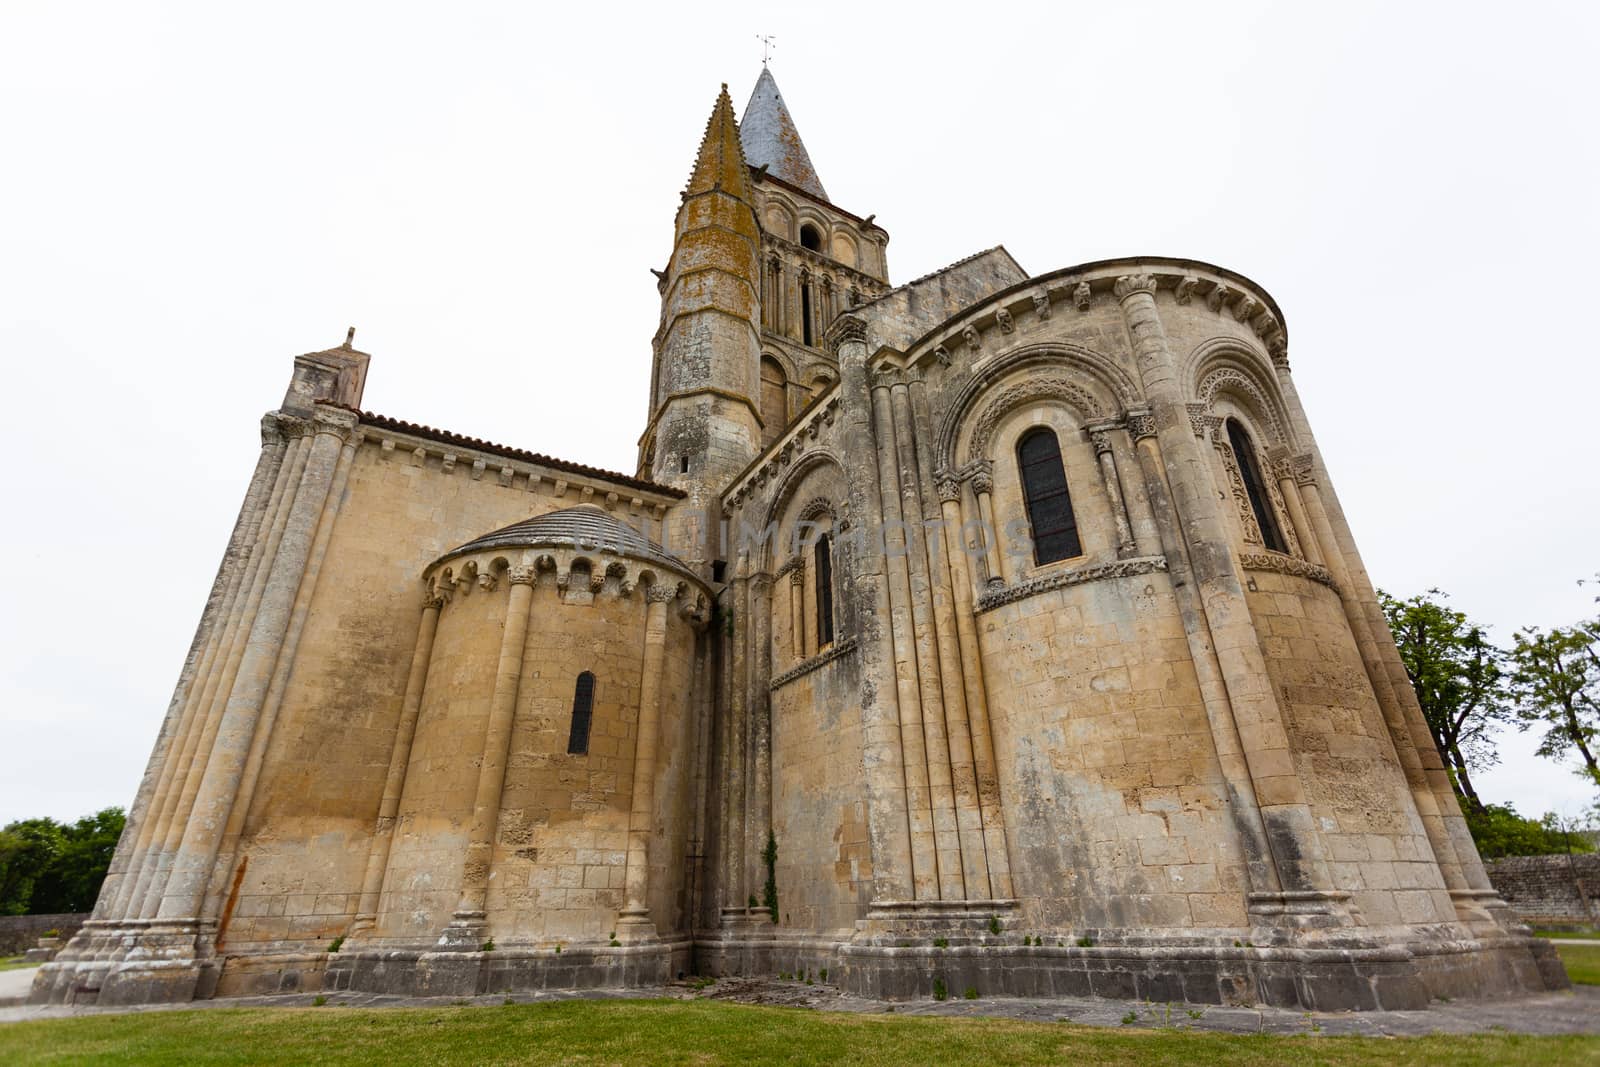 Chevet of Aulnay de Saintonge church in Charente Maritime region of France